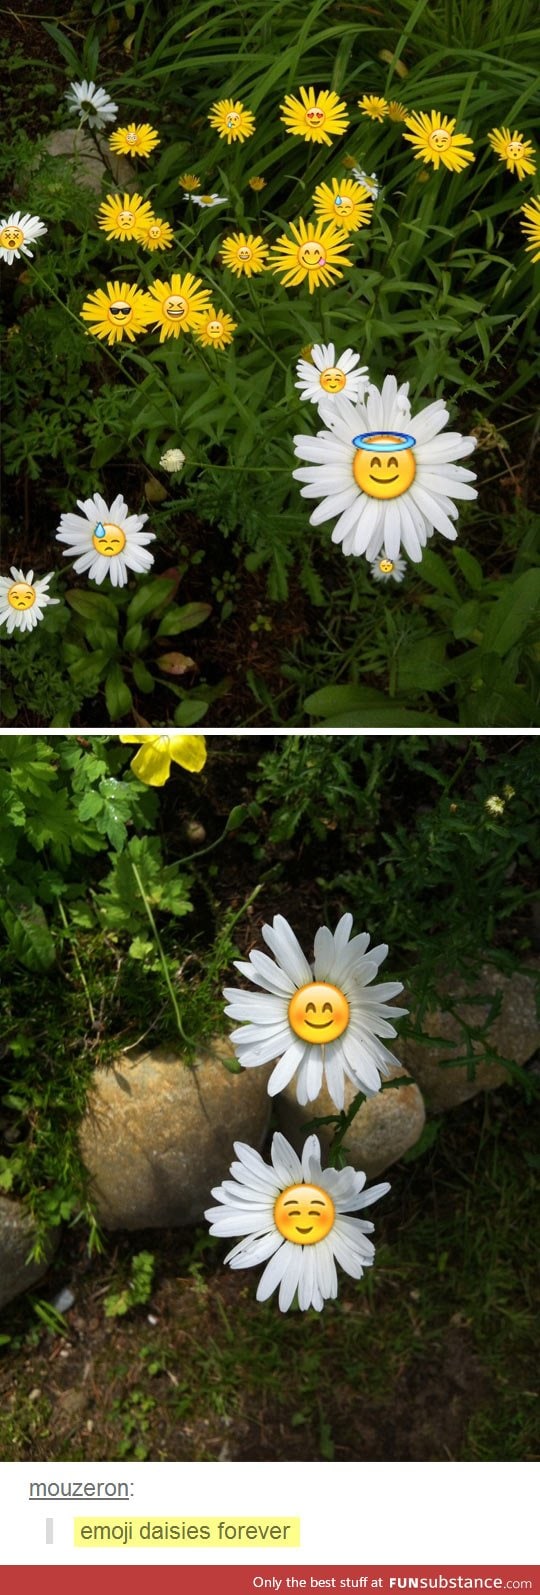 Emoji daisies